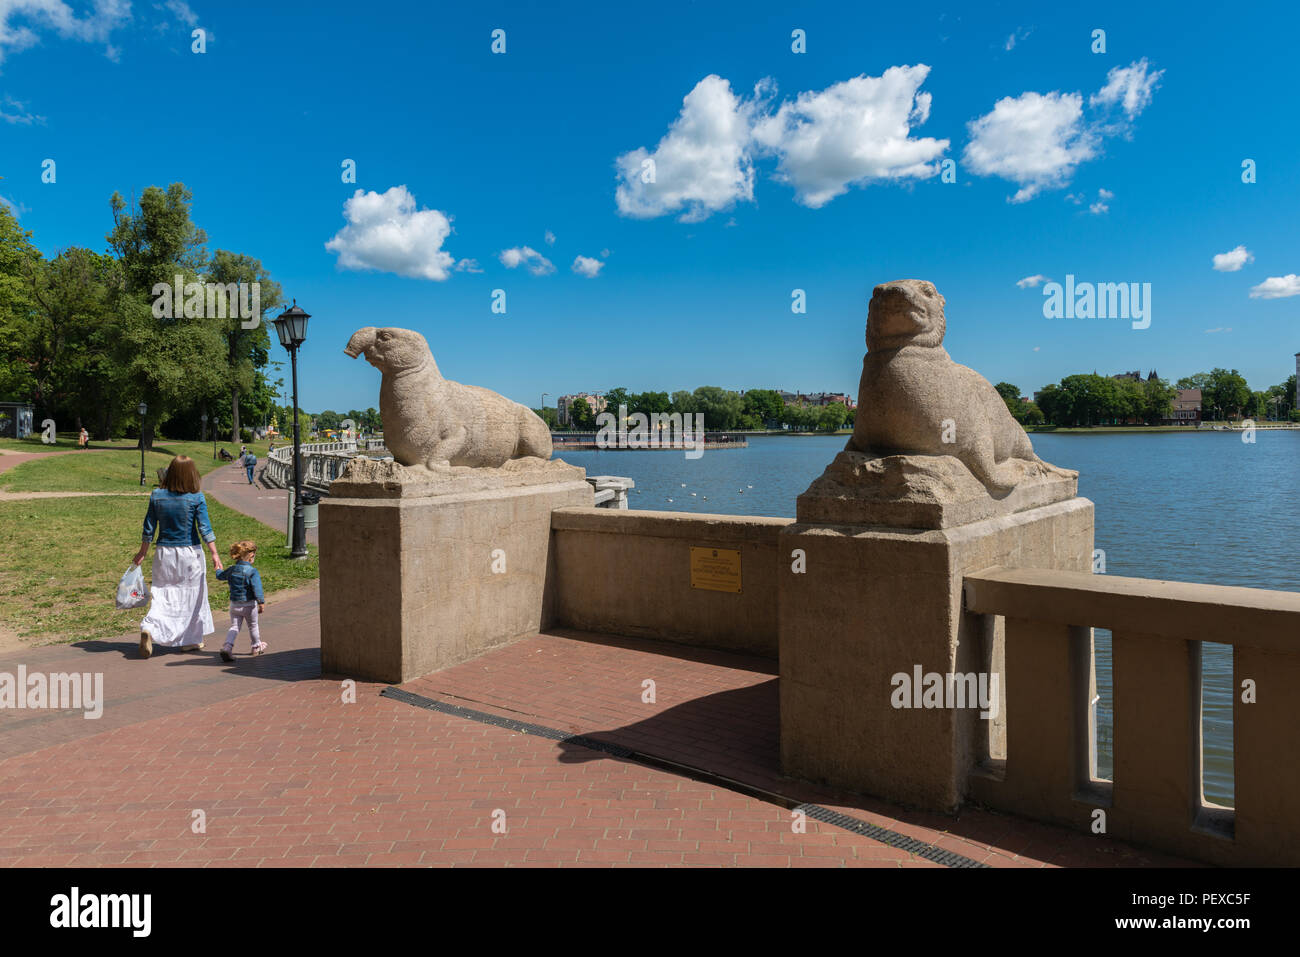 Moderne Promenade neben dem oberteich oder Oberer See, Skulpturen von Robben und Walrosse, Ostsee, Kaliningrad, Oblast Kaliningrad, Russland Stockfoto